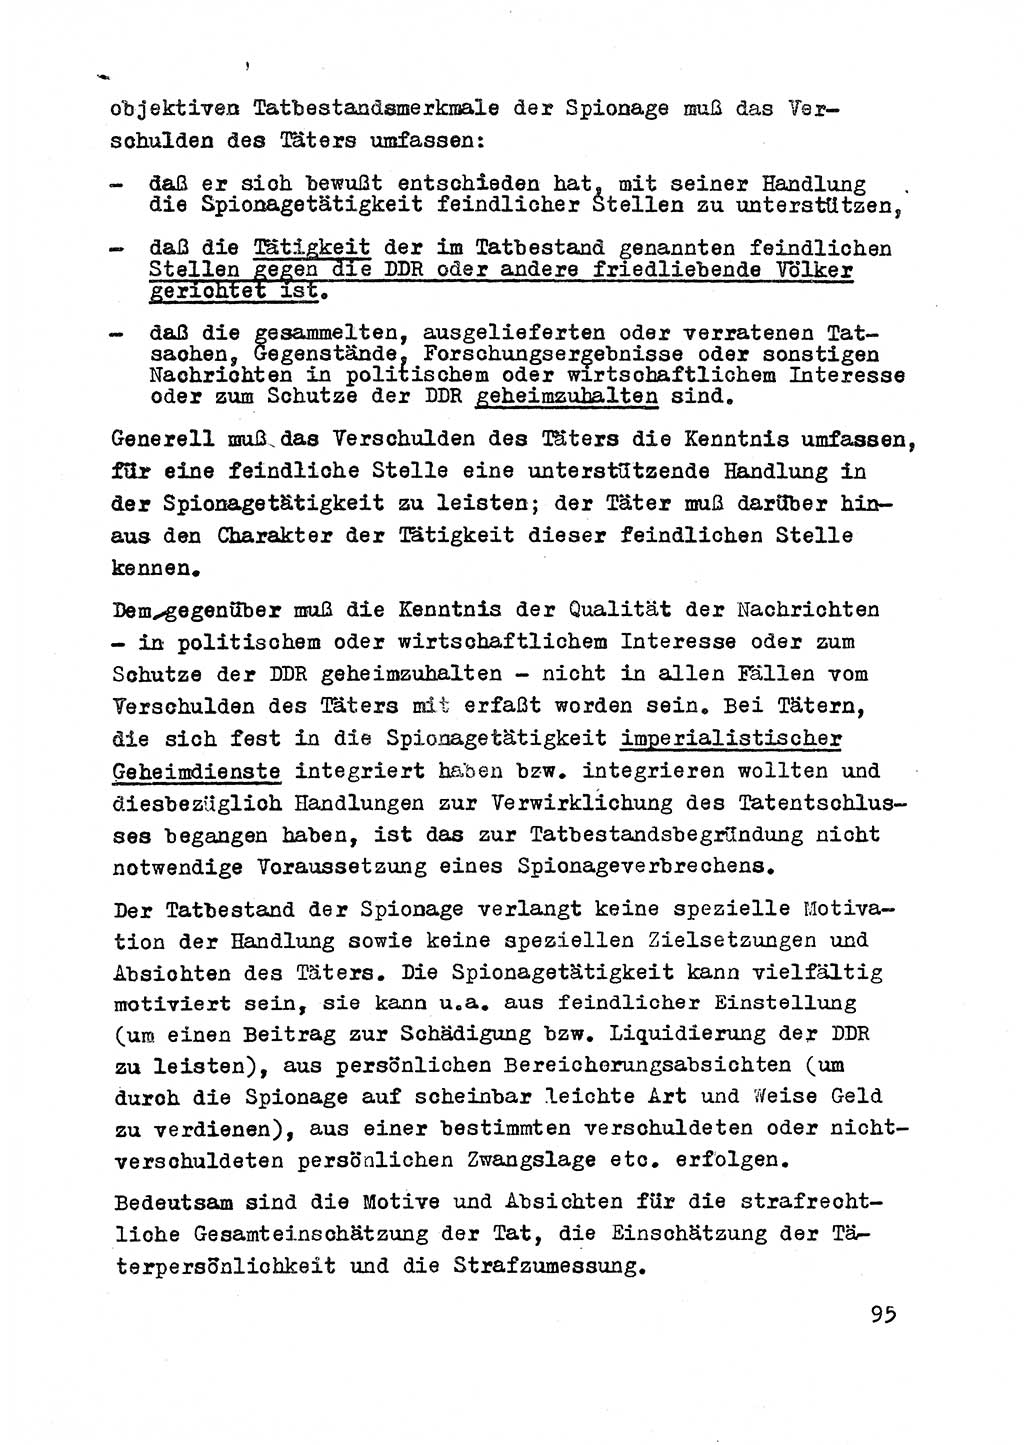 Strafrecht der DDR (Deutsche Demokratische Republik), Besonderer Teil, Lehrmaterial, Heft 2 1969, Seite 95 (Strafr. DDR BT Lehrmat. H. 2 1969, S. 95)